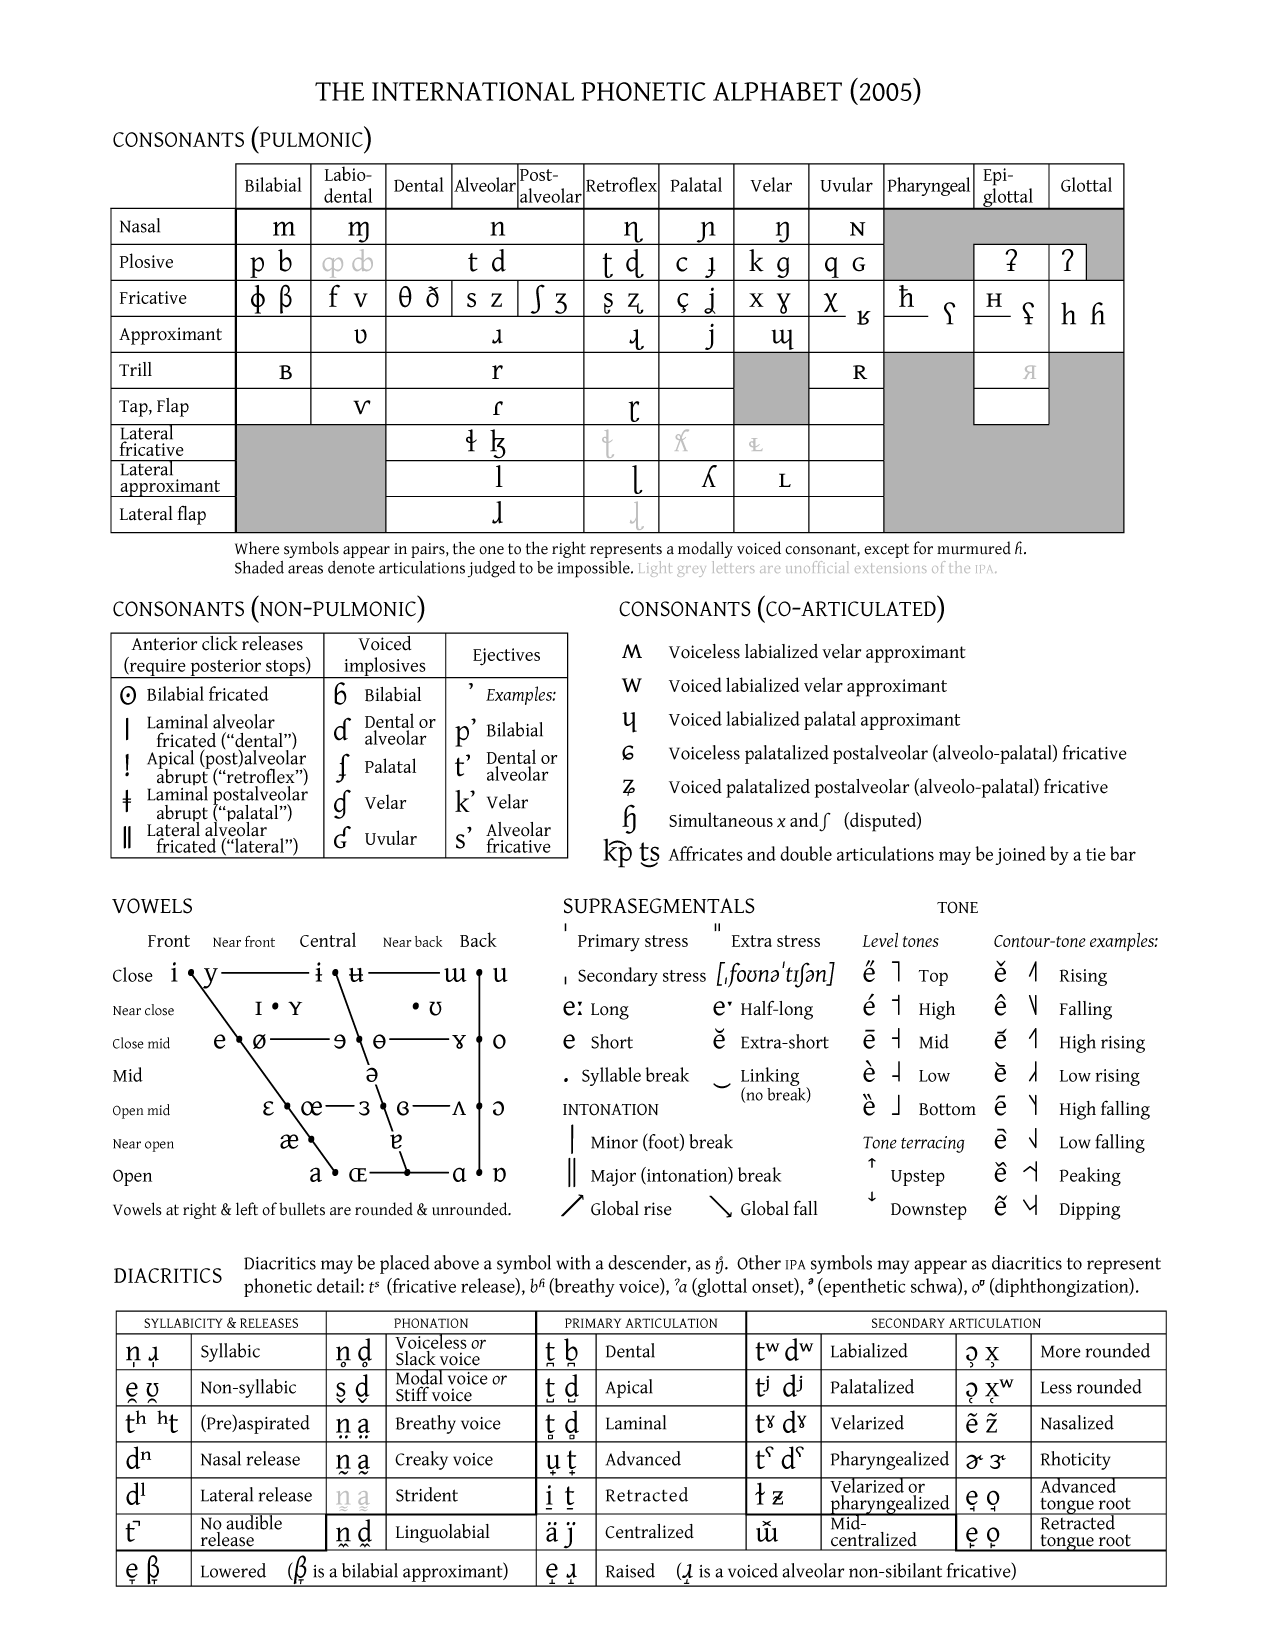 International Phonetic Alphabet | Psychology Wiki | FANDOM powered by Wikia